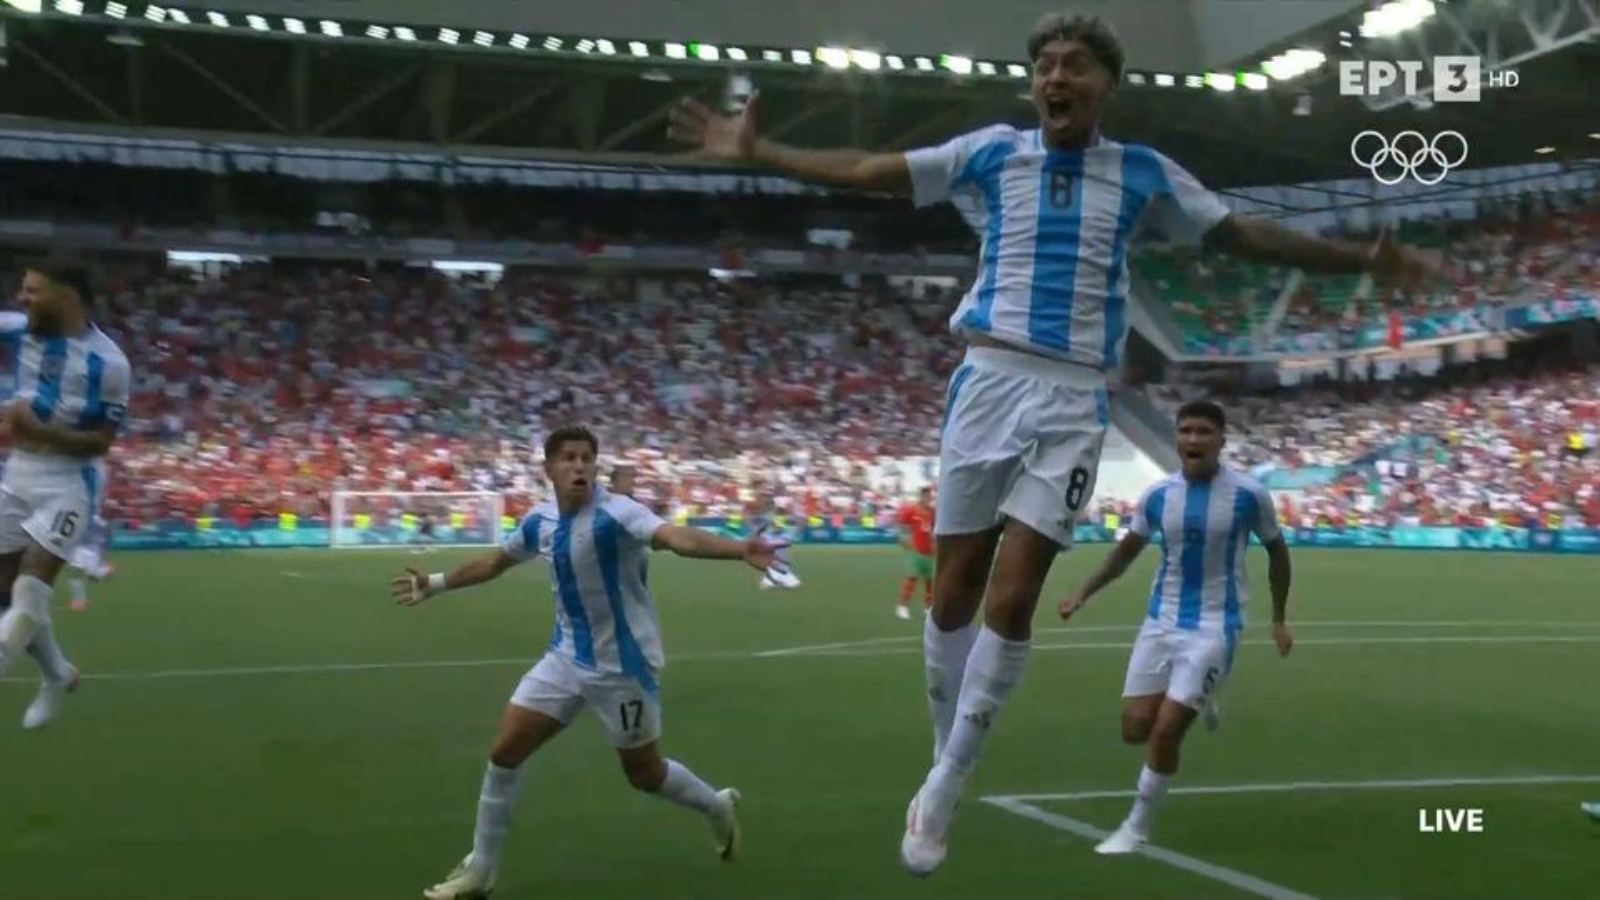 O νεαρός άσος του Ολυμπιακού , ήταν εκ των κορυφαίων στη νίκη της Αργεντινής επί του Ιράκ με 3-1